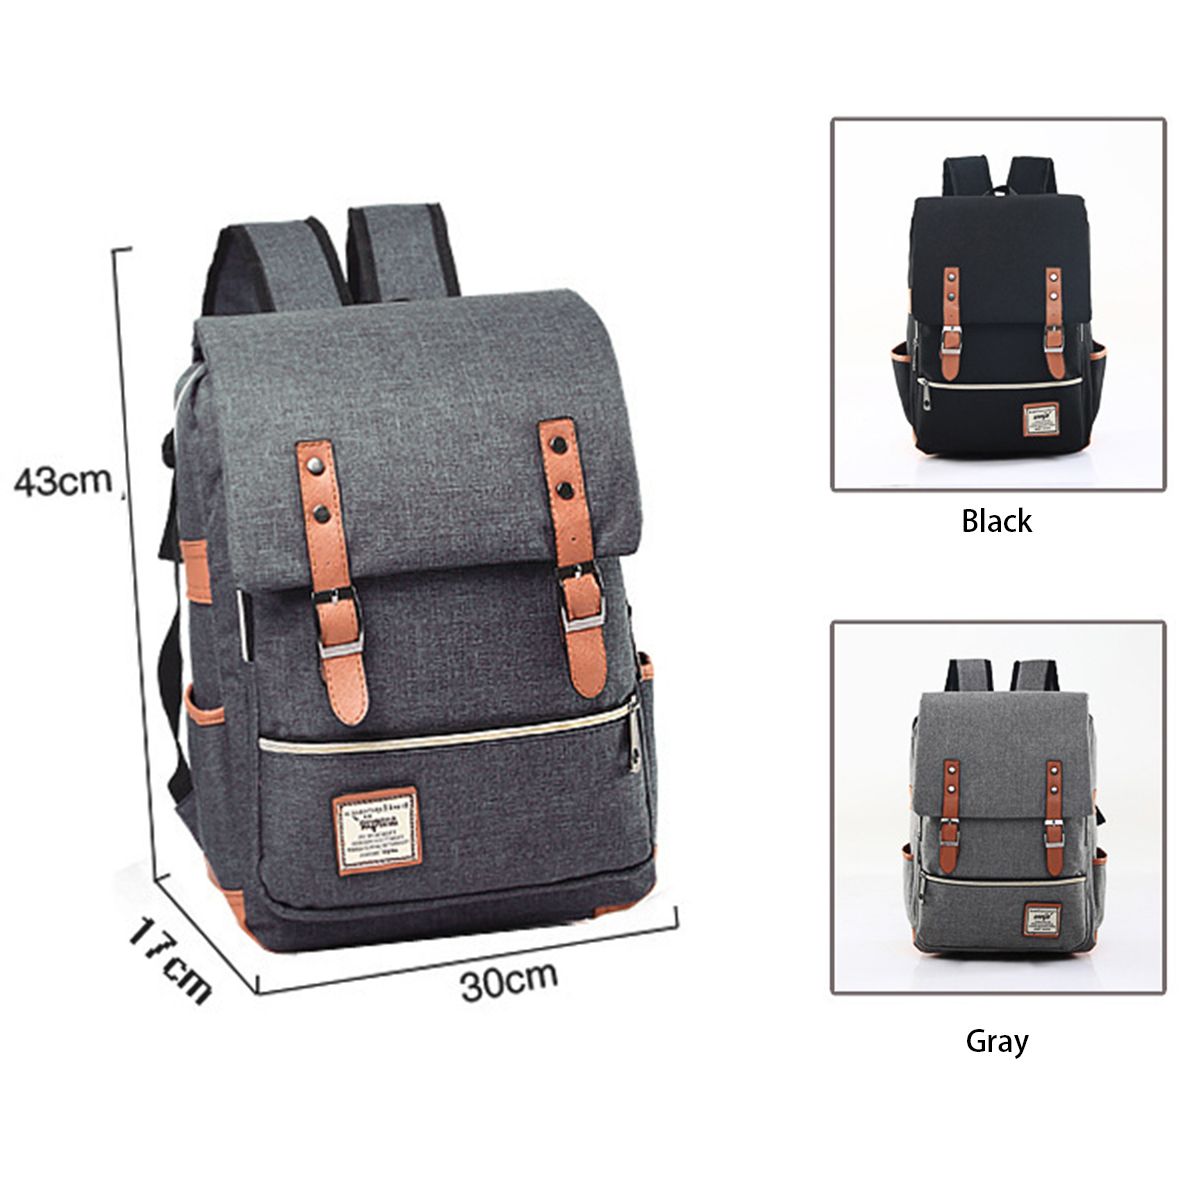 Business-Backpack-Laptop-Bag-Canvas-Shoulders-Storage-Bag-Men-Women-17L-Travel-Handbag-Schoolbag-for-1744128